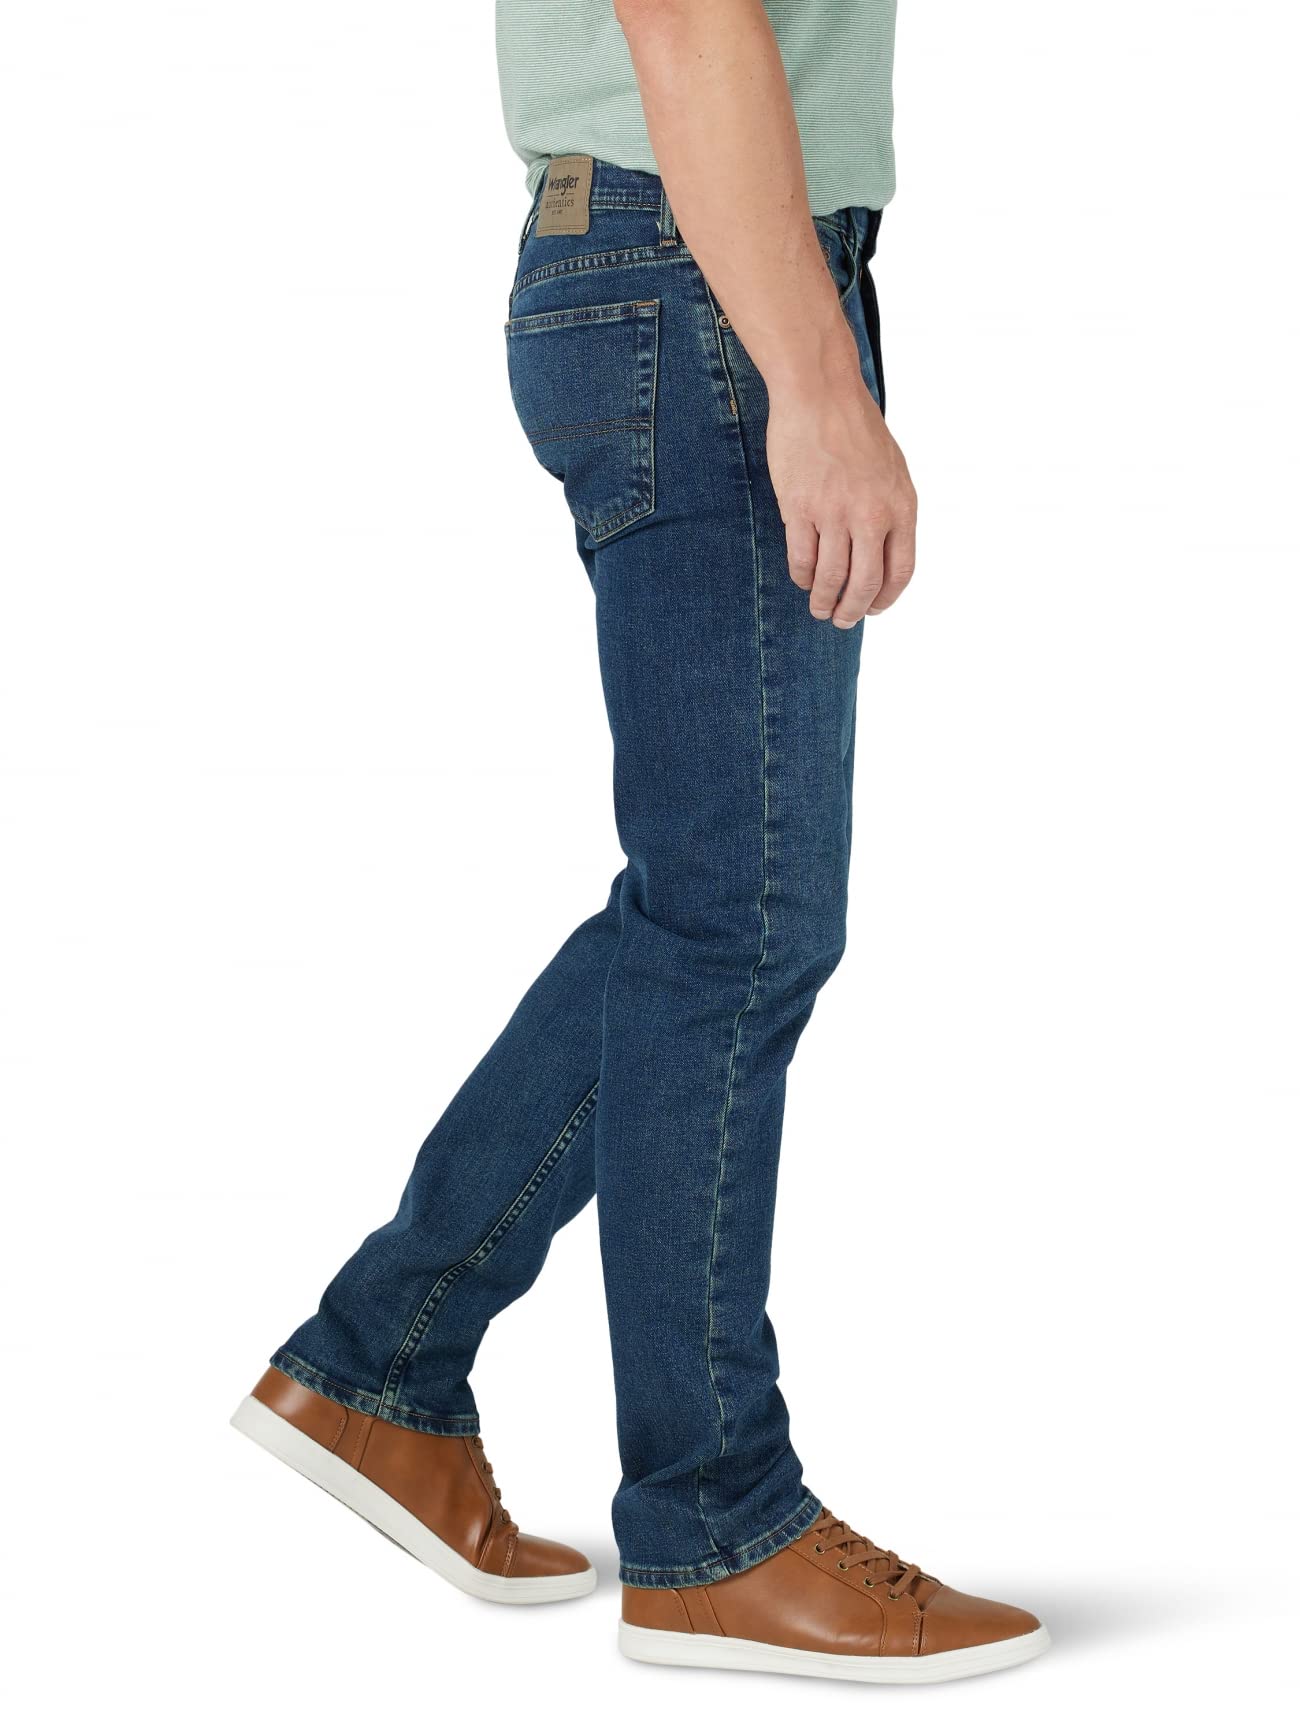 Wrangler Authentics Men's Regular Fit Comfort Flex Waist Jean, Leon, 29W x  30L : : Clothing, Shoes & Accessories